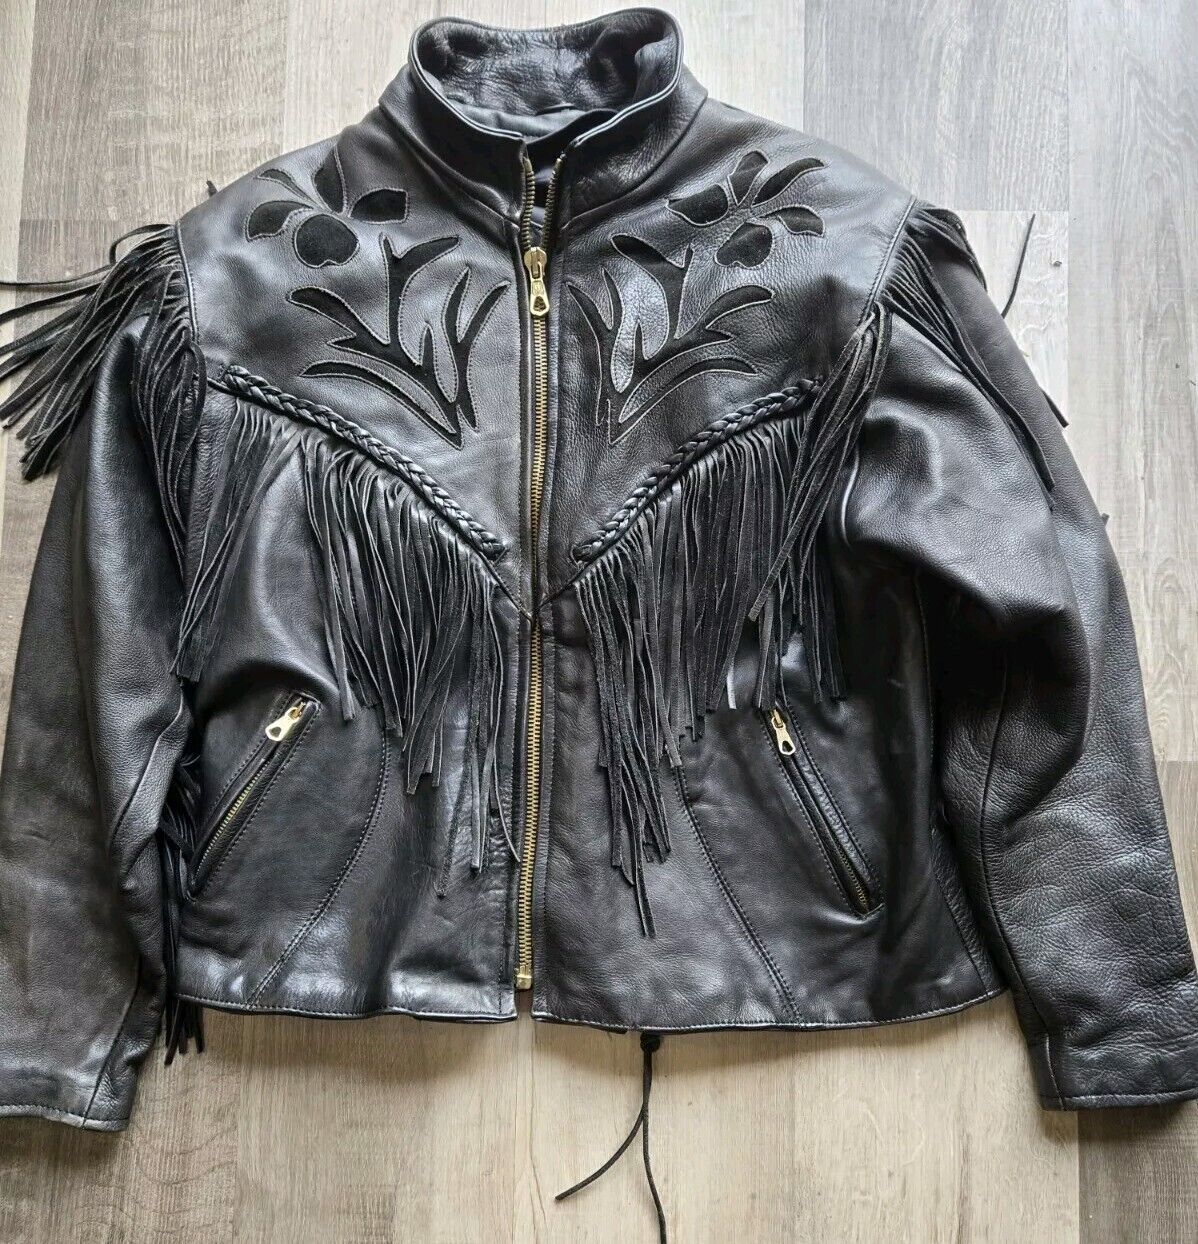 HOT LEATHERS Women’s Black Genuine Leather Long Fringe Motorcycle Jacket Size 14